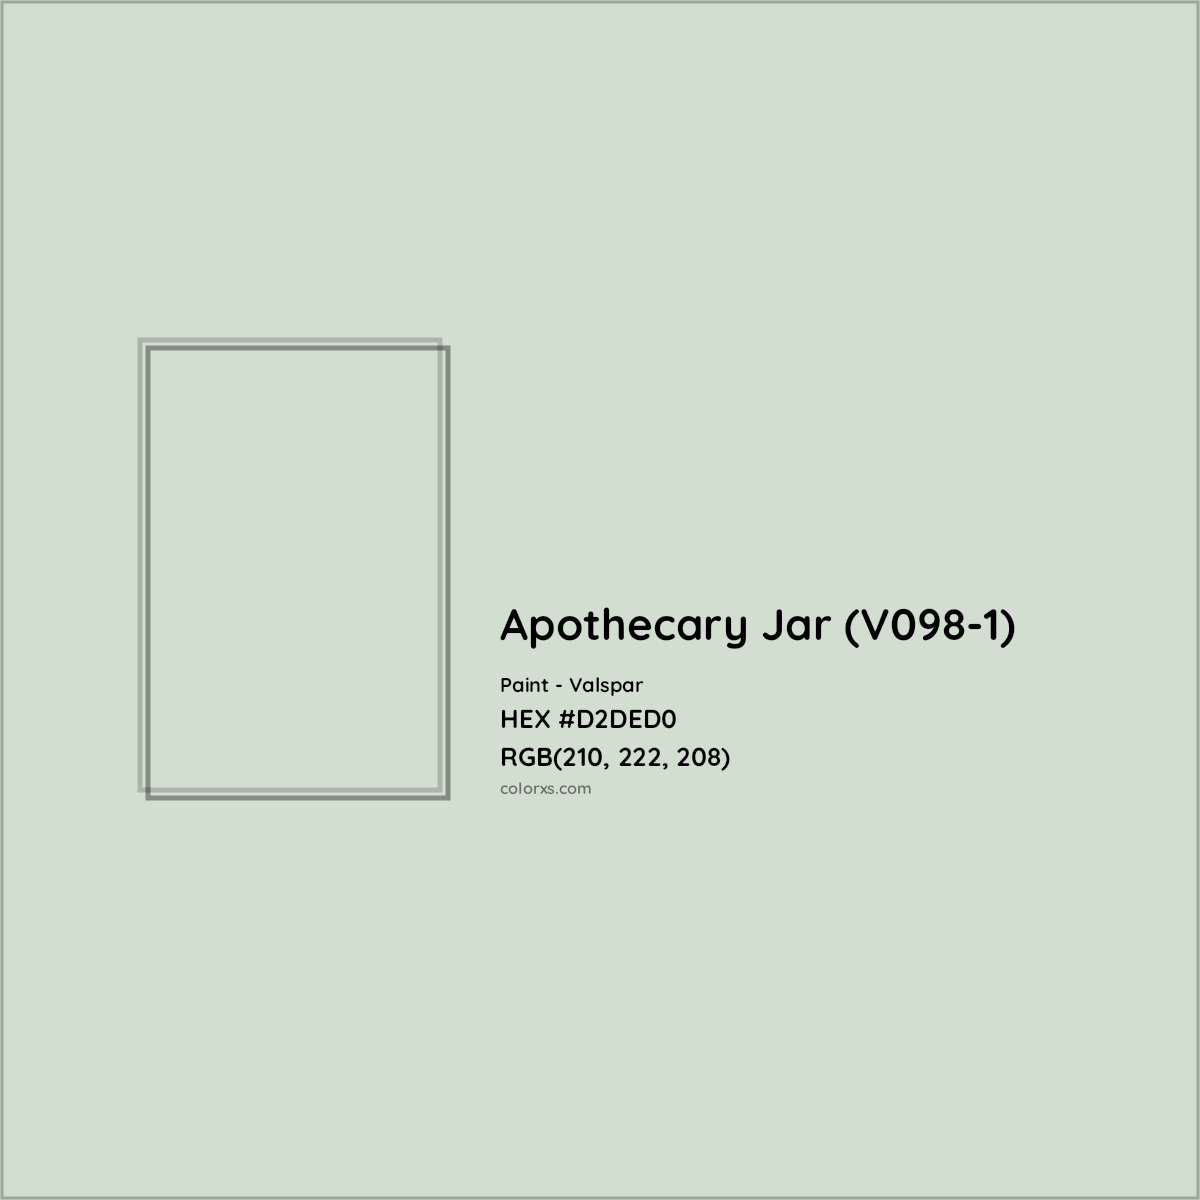 HEX #D2DED0 Apothecary Jar (V098-1) Paint Valspar - Color Code